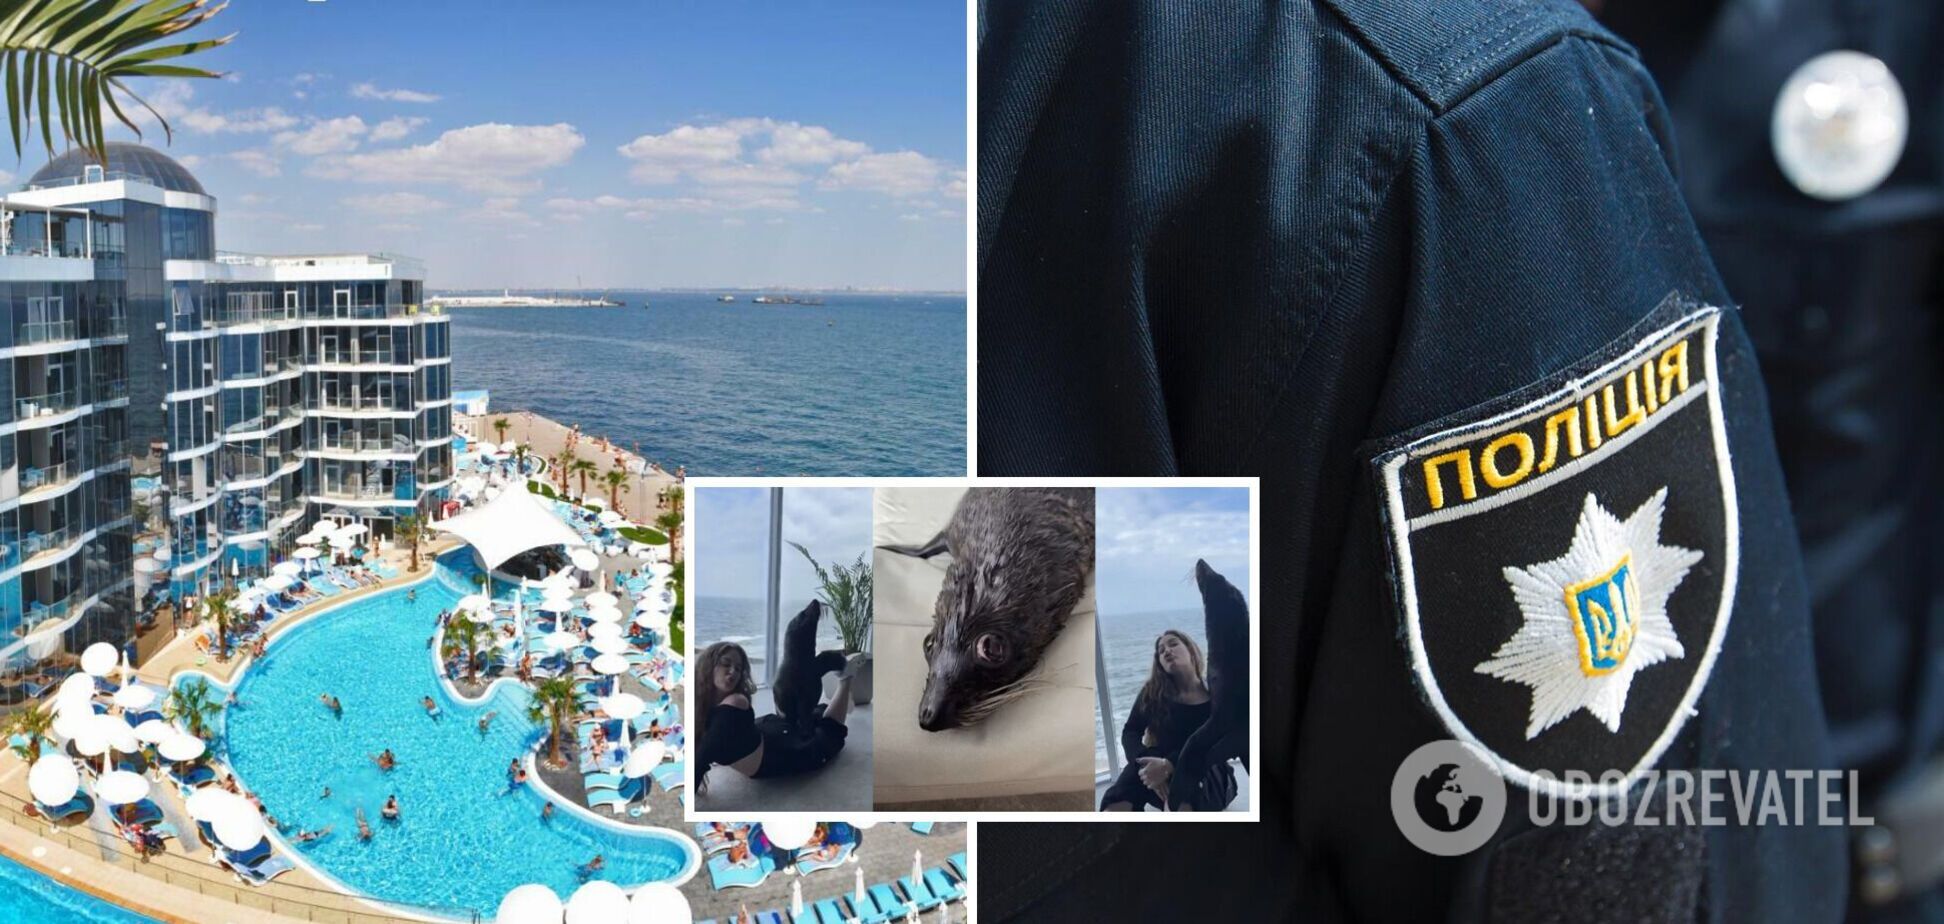 Полиция начала расследование после скандала в одесском отеле 'Немо' с морскими котиками